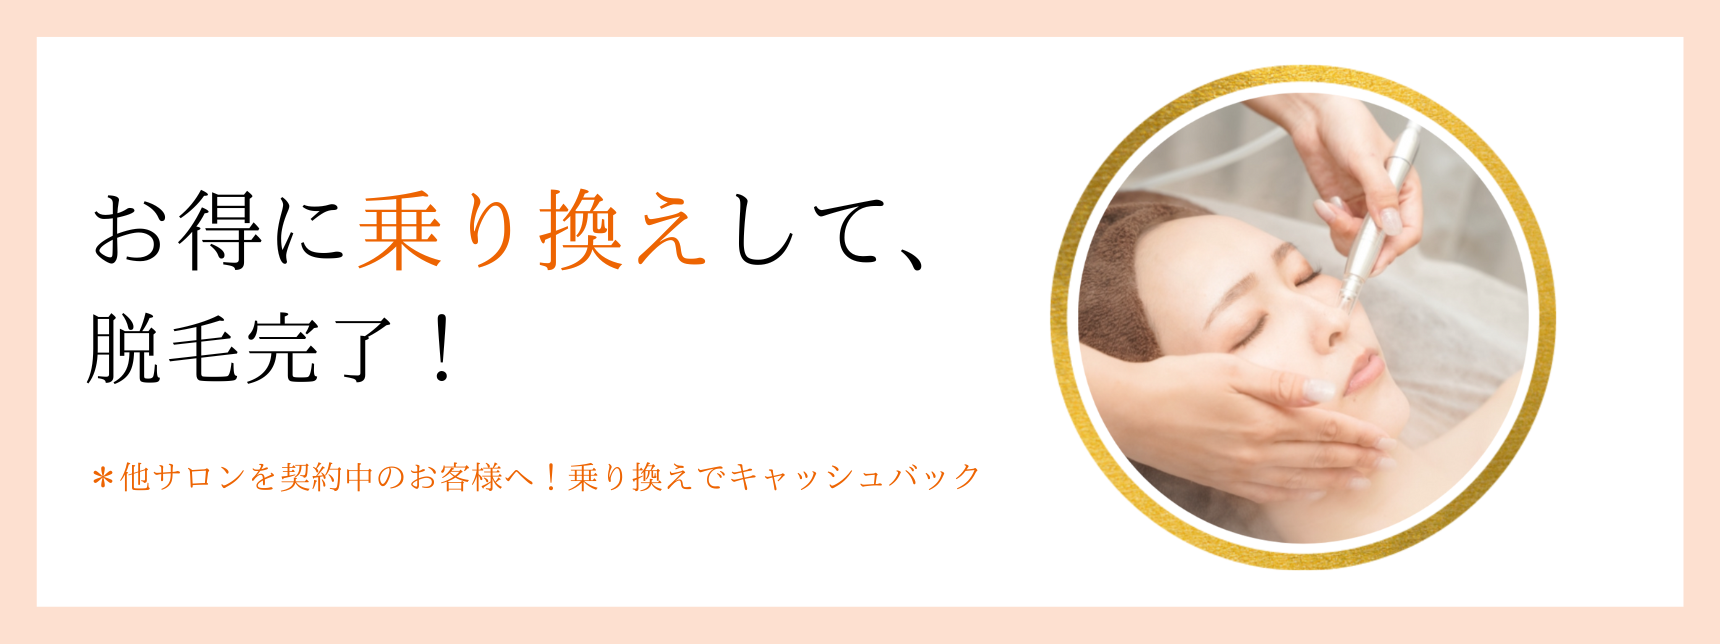 美肌脱毛専門店 Pearl plus - 日本一真面目な脱毛サロン